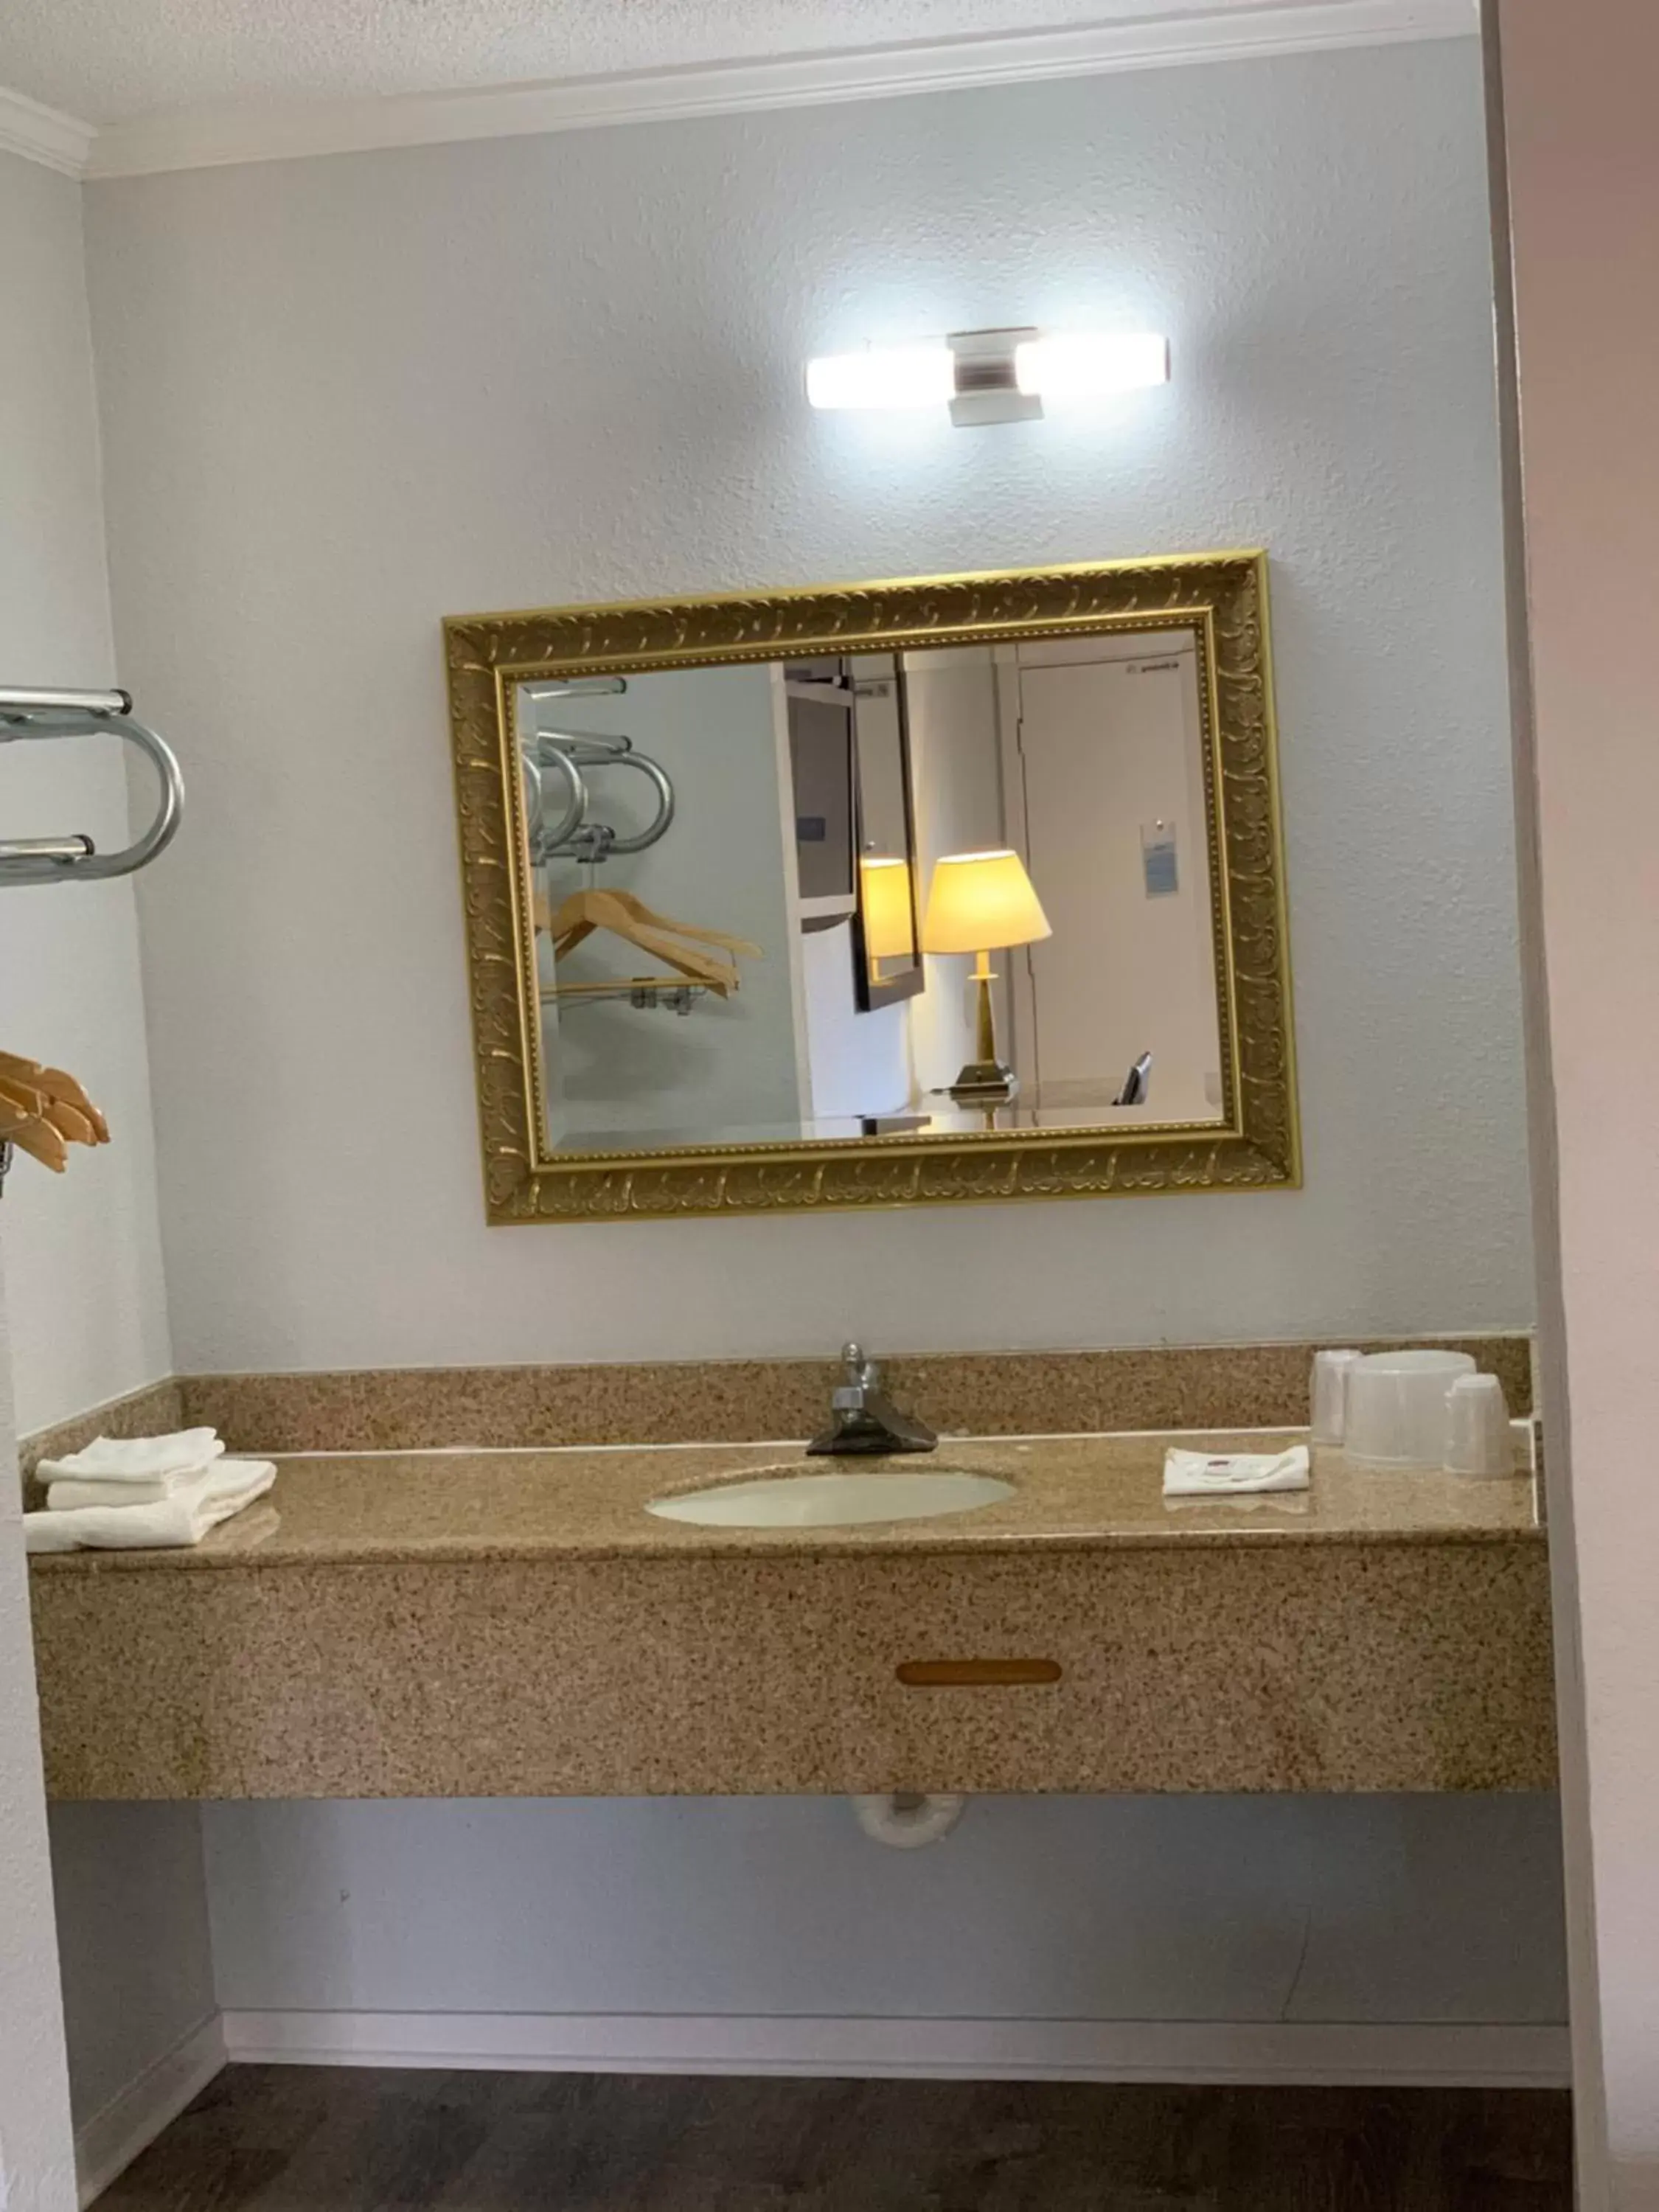 Bathroom in Motel 6 Newport News, VA – Fort Eustis